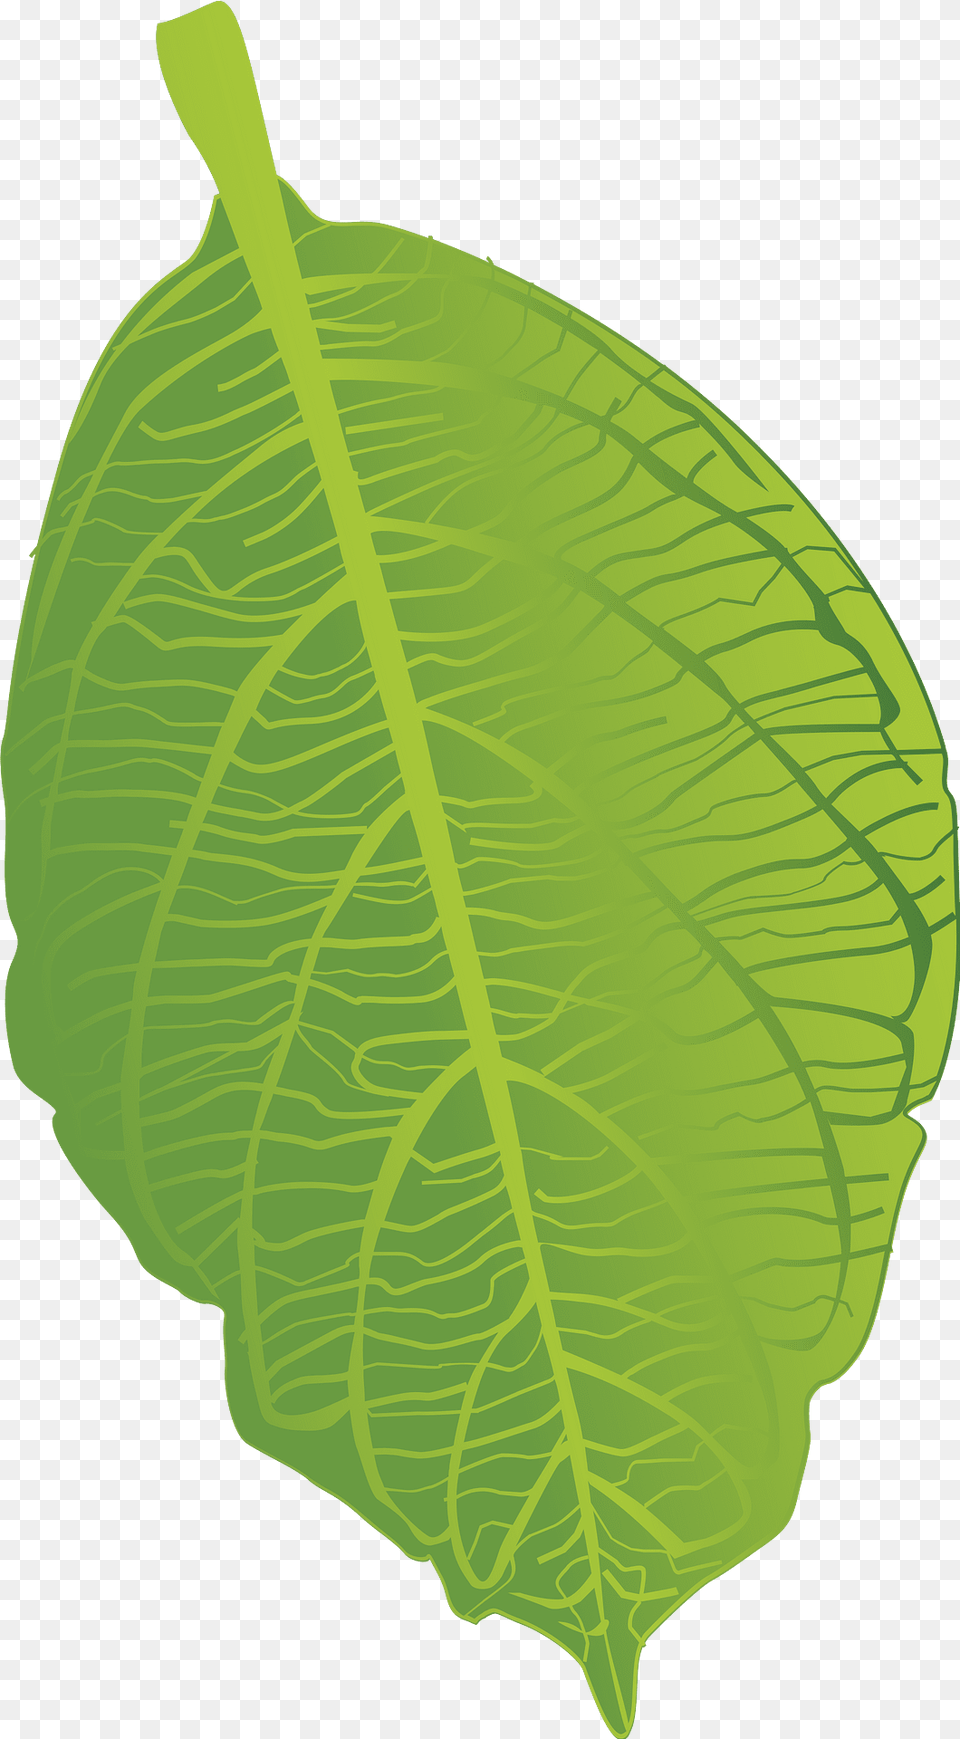 Green Leaf Clipart, Plant, Vegetation, Ammunition, Grenade Png Image